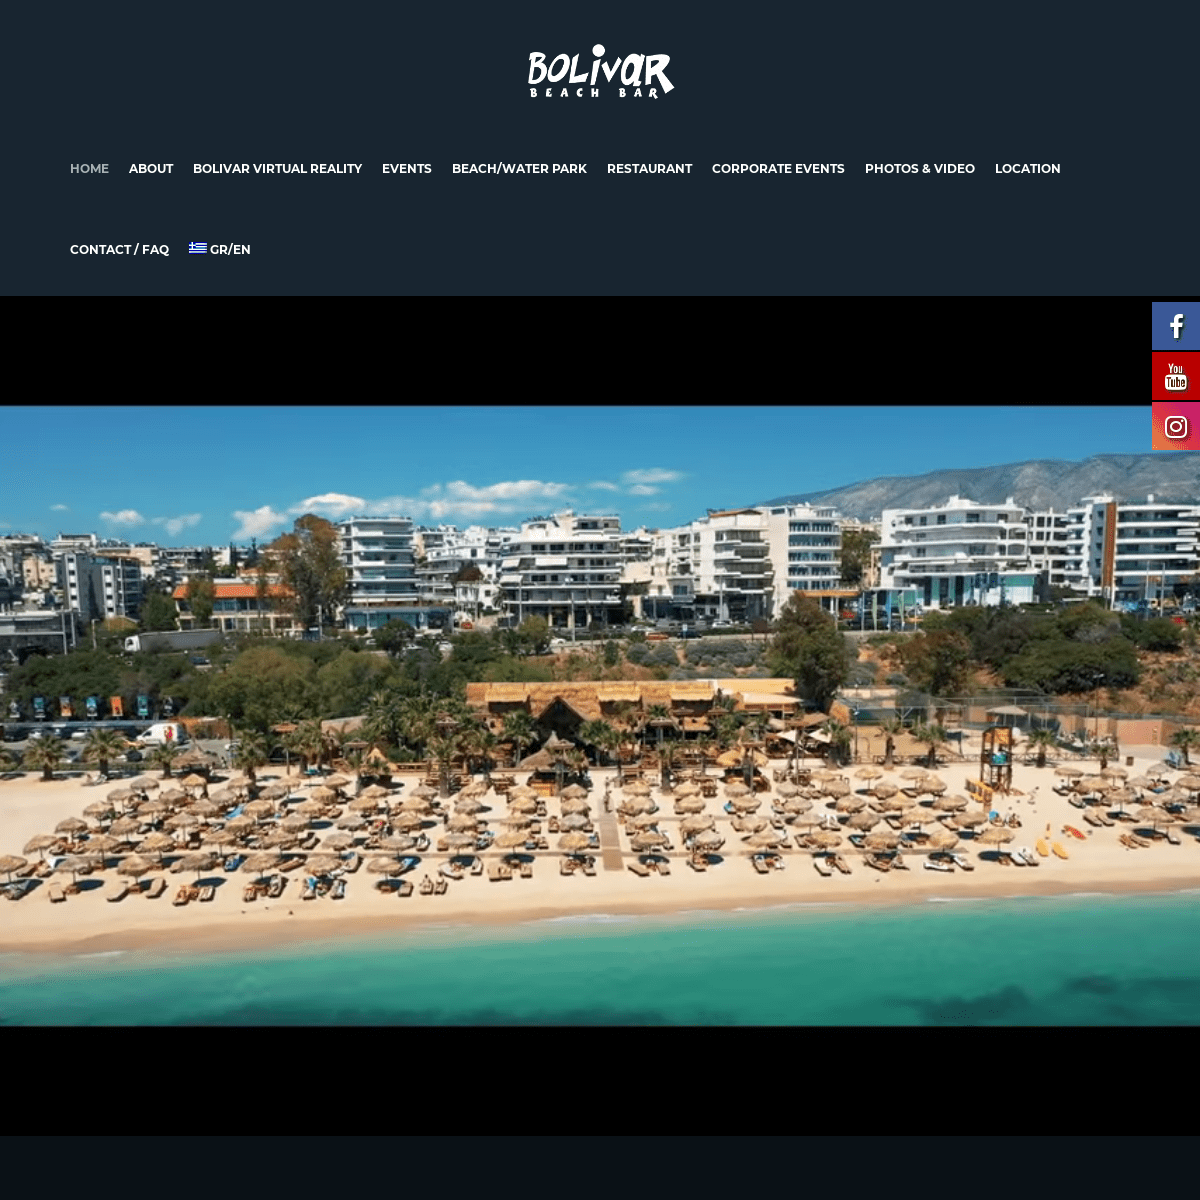 Bolivar Beach Bar - Official website - Athens - Greece